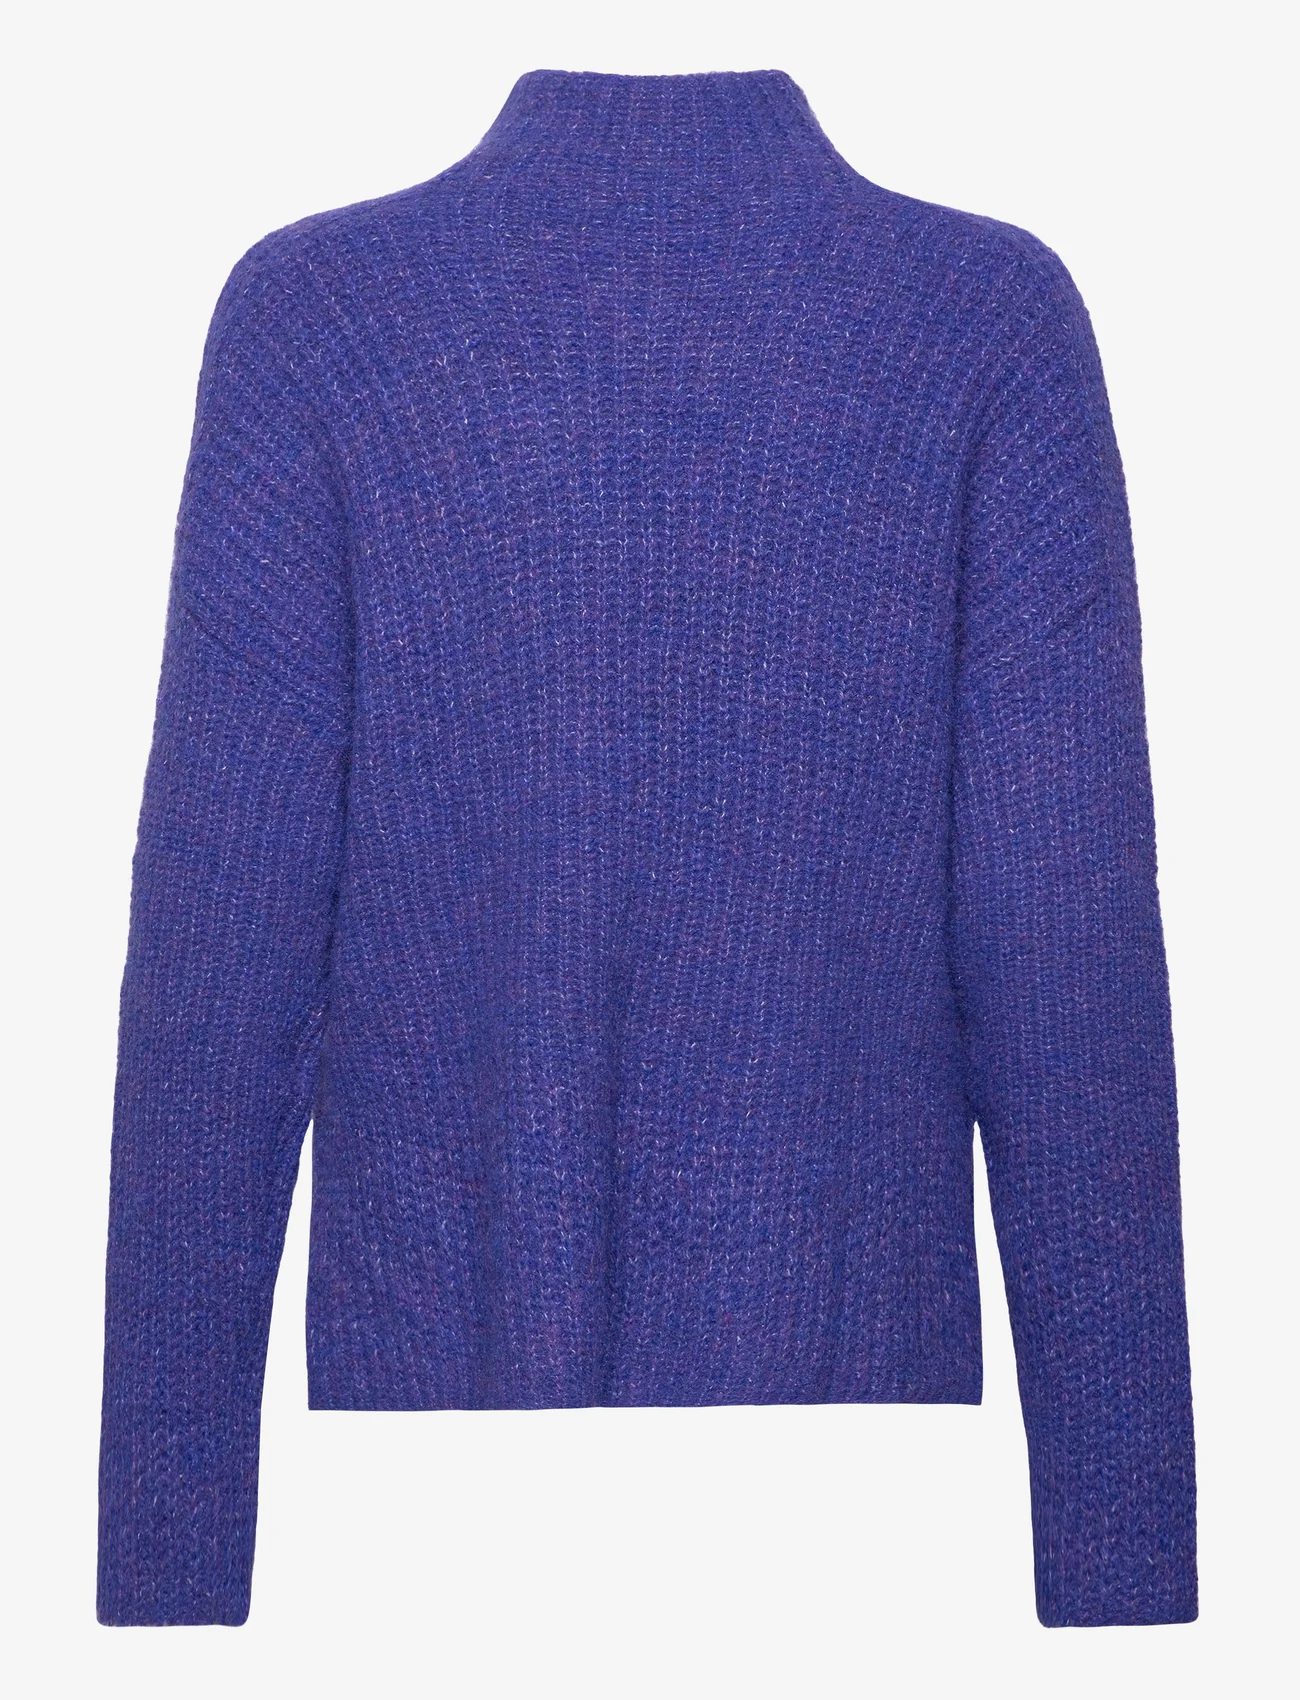 Tom Tailor - knit pullover mock-neck - gebreide truien - crest blue melange - 1